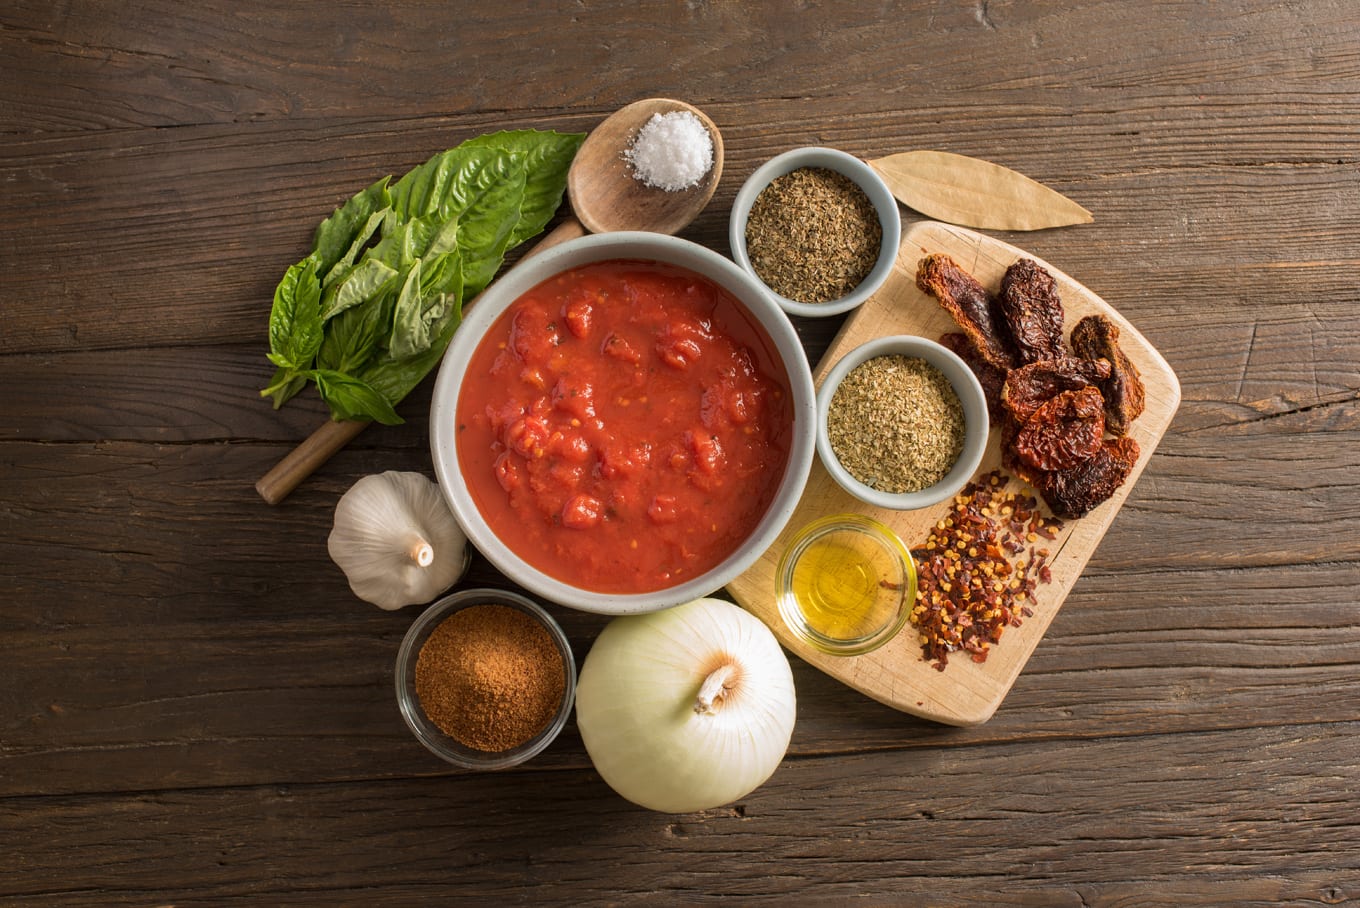 simple marinara sauce ingredients in bowls